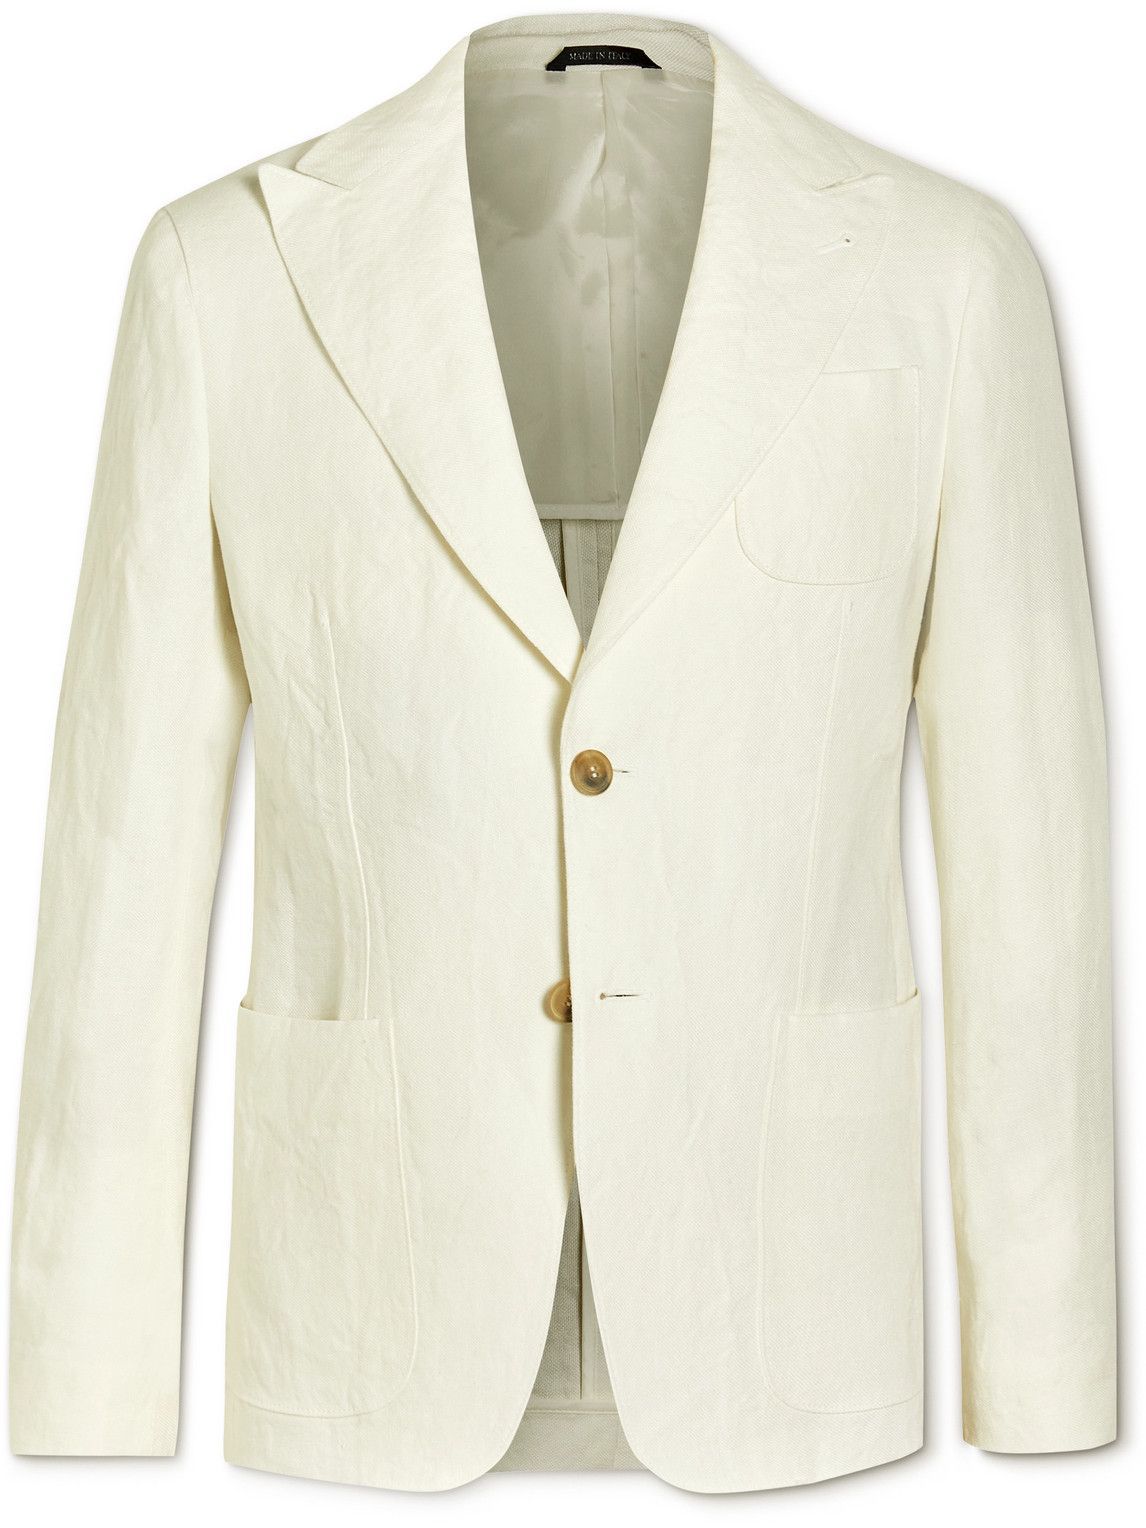 Giorgio Armani - Upton Linen Suit Jacket - Neutrals Giorgio Armani